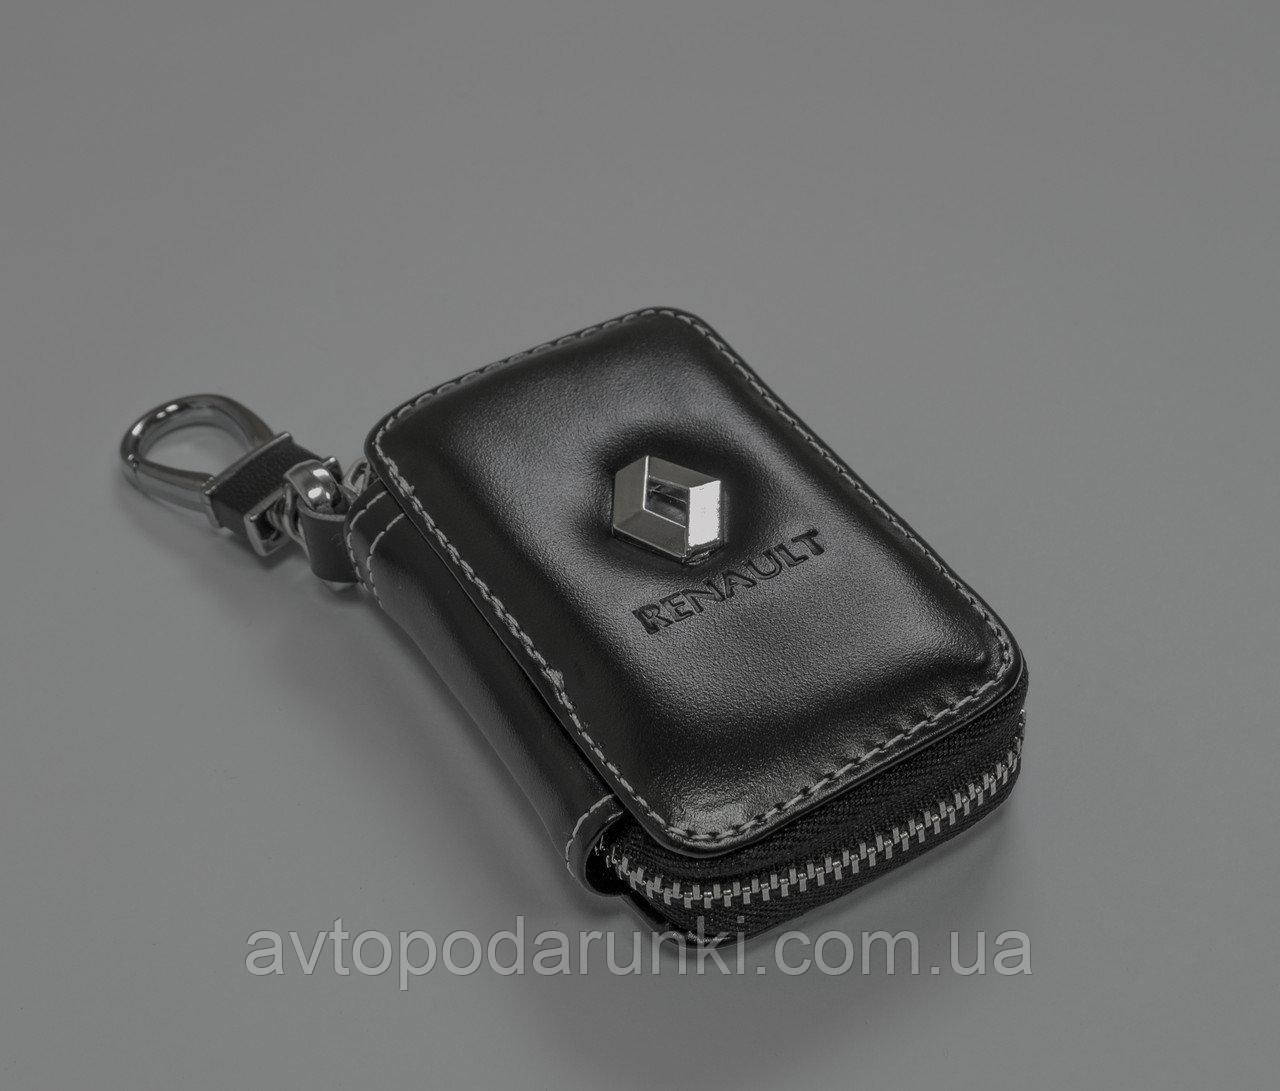 Ключница RENAULT, кожаная автоключница с логотипом 
РЕНО (гладкая черная 20002)